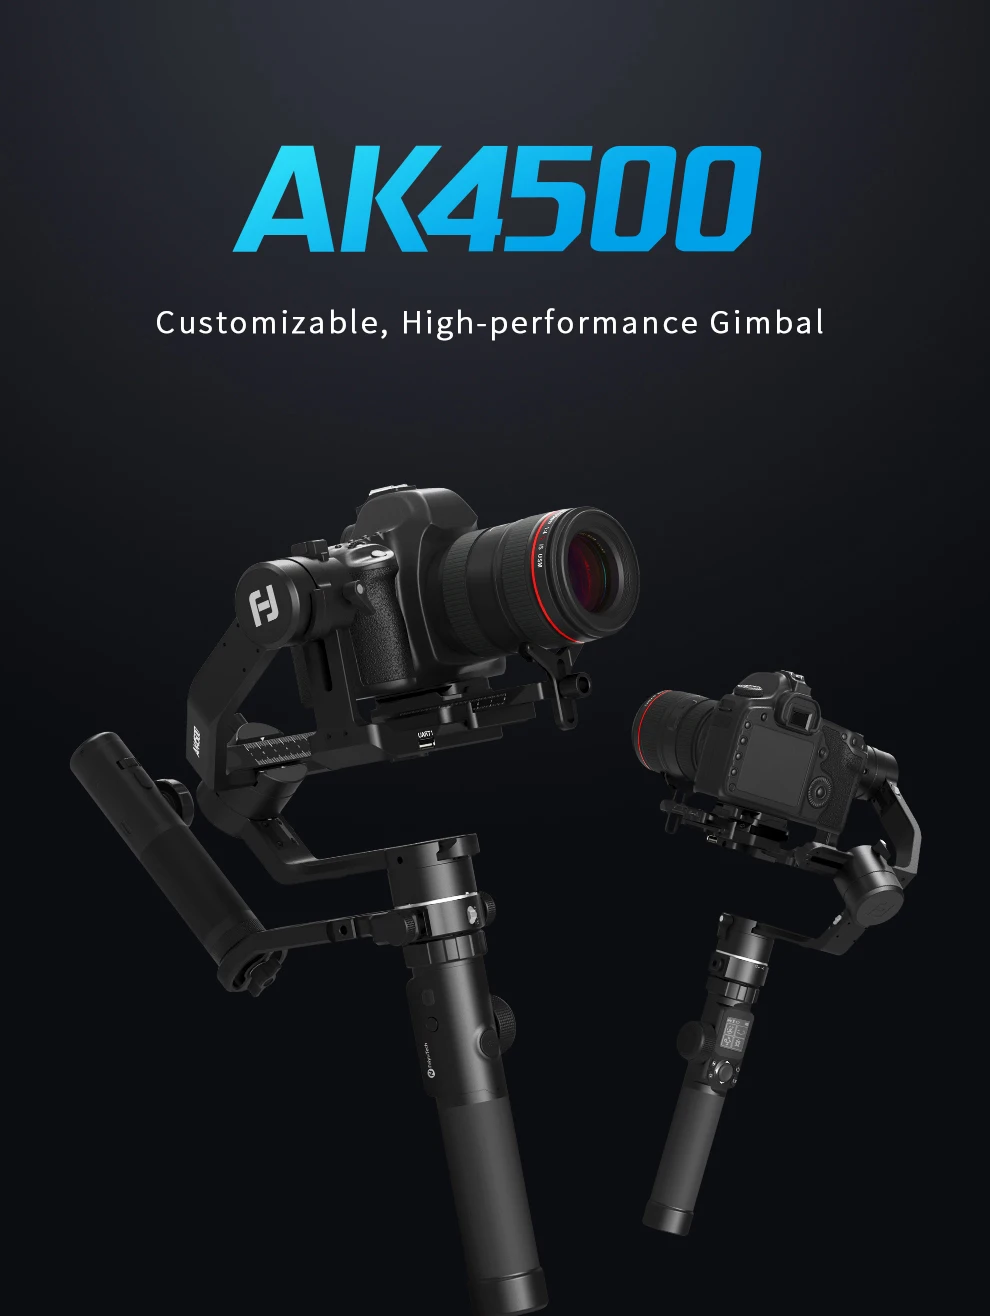 FeiyuTech AK4500 3-осевой портативный монопод с шарнирным замком DSLR Камера Комплект стабилизатора для sony цифровой зеркальной камеры Canon Nikon 4,6 кг грузоподъемность с пультом дистанционного управления следите за Fcous